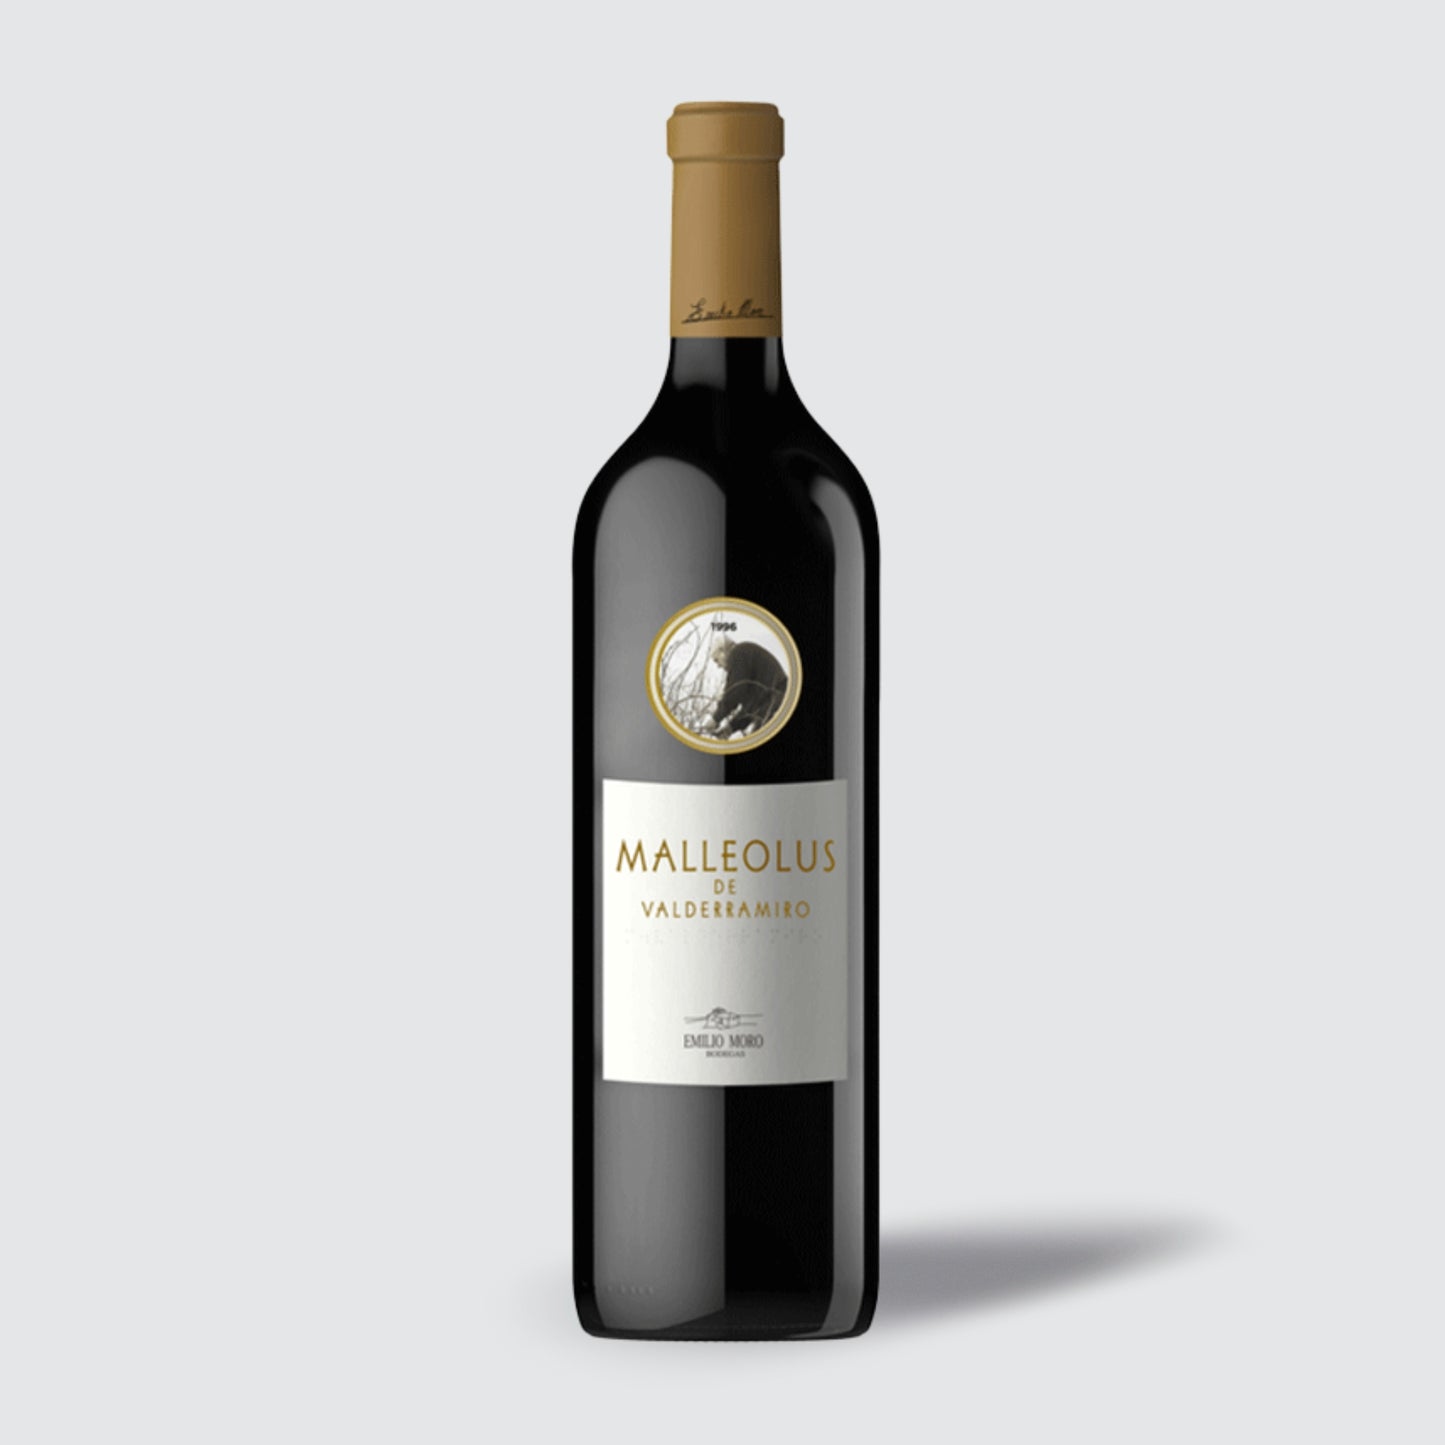 Emilio Moro Malleolus de Valderramiro 2018 Tempranillo Ribera del Duero Red Wine